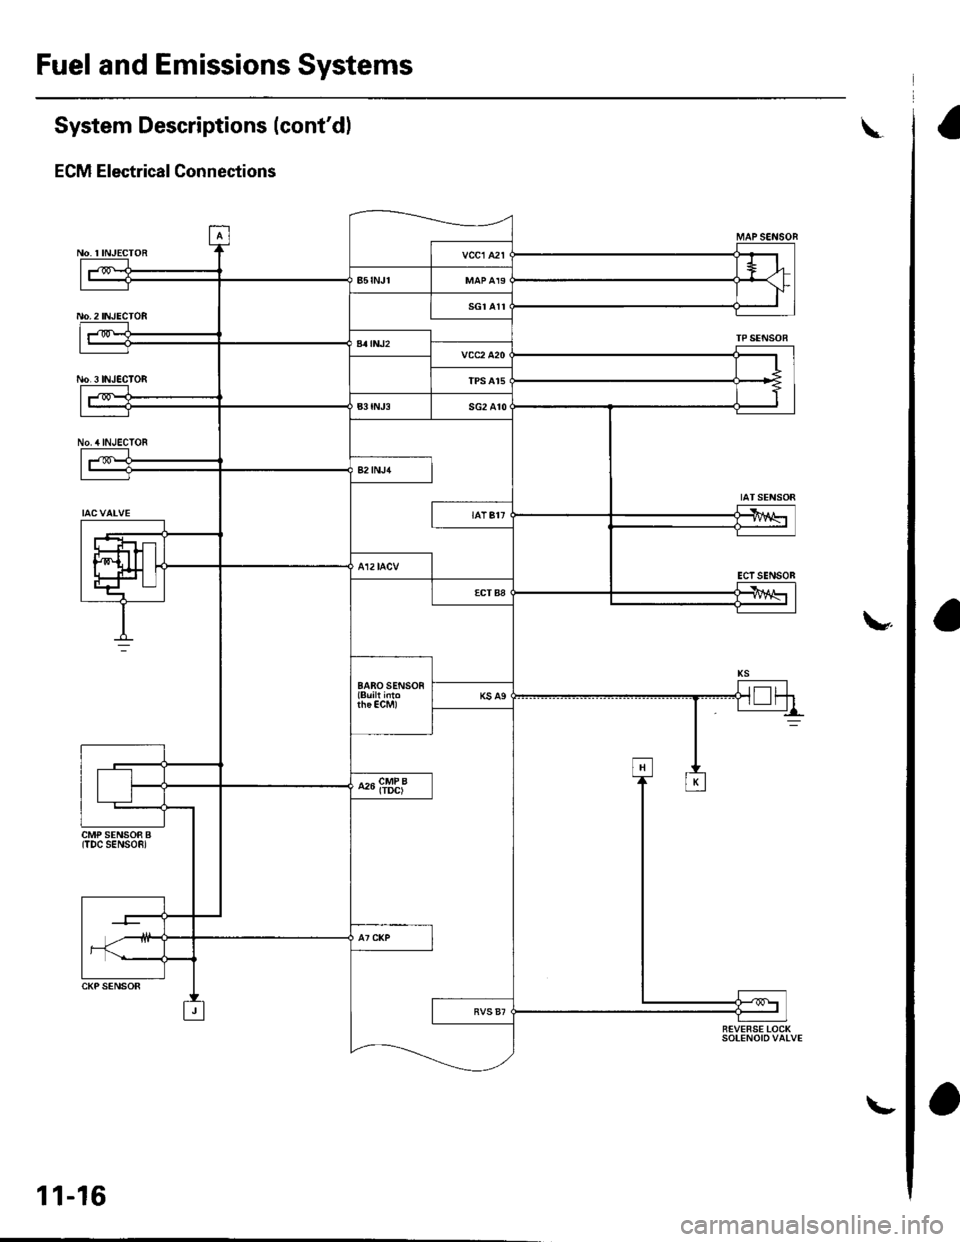 HONDA CIVIC 2002 7.G Owners Guide Fuel and Emissions Systems
aSystem Descriptions (contdl
ECM Electrical Connections
\
No. INJECTOR
No,2INJECTOR
No.3 INJEC]OB
No./tINJECTOF
MAPSENSON
TPSENSOR
IATSENSOR
ECTSENSOB
\
CMP SENSOR B(TDC S